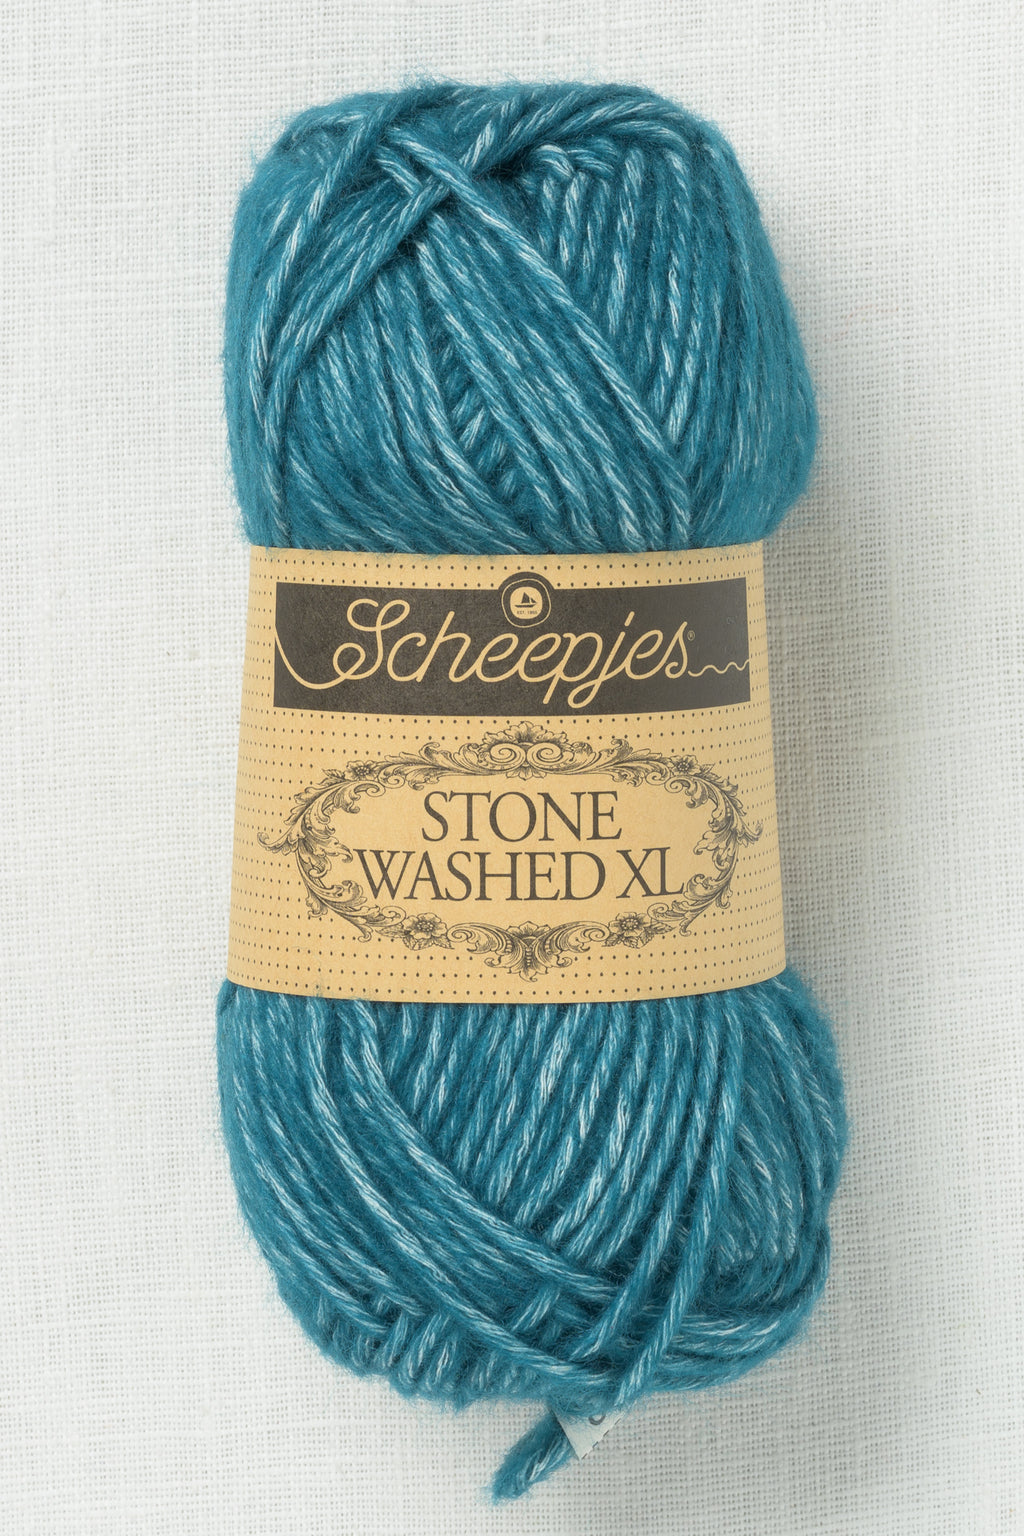 Scheepjes Stone Washed XL 845 Blue Apatite